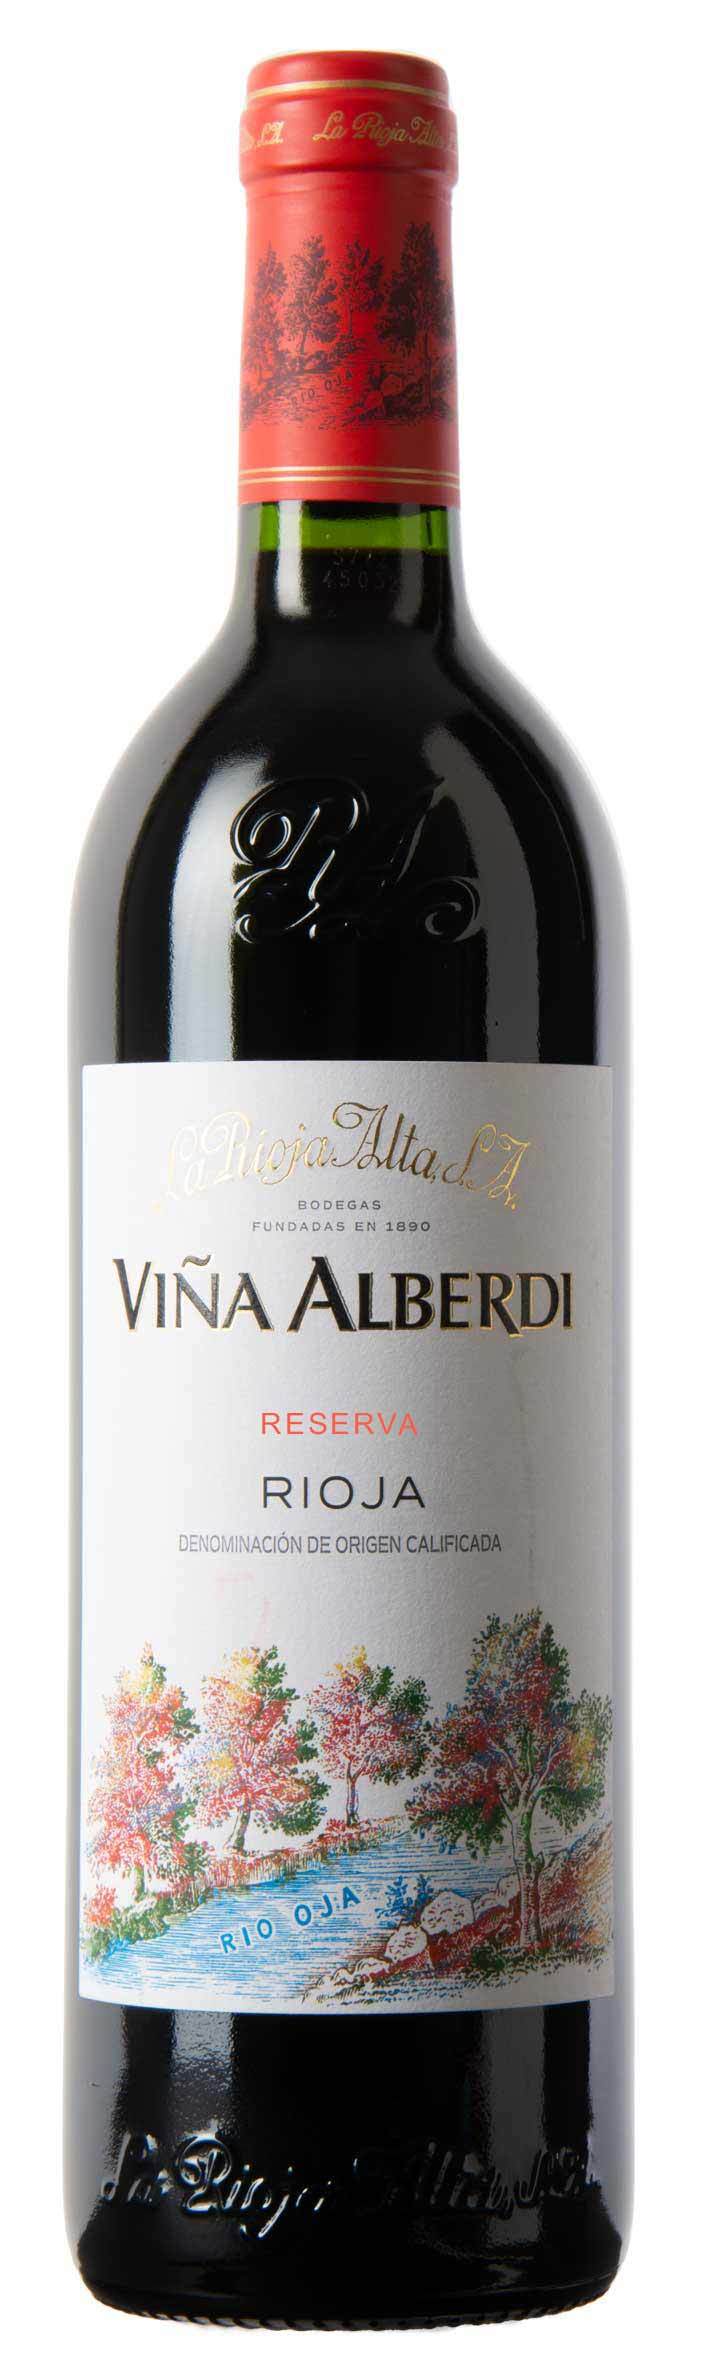 La Rioja Alta Viña Alberdi